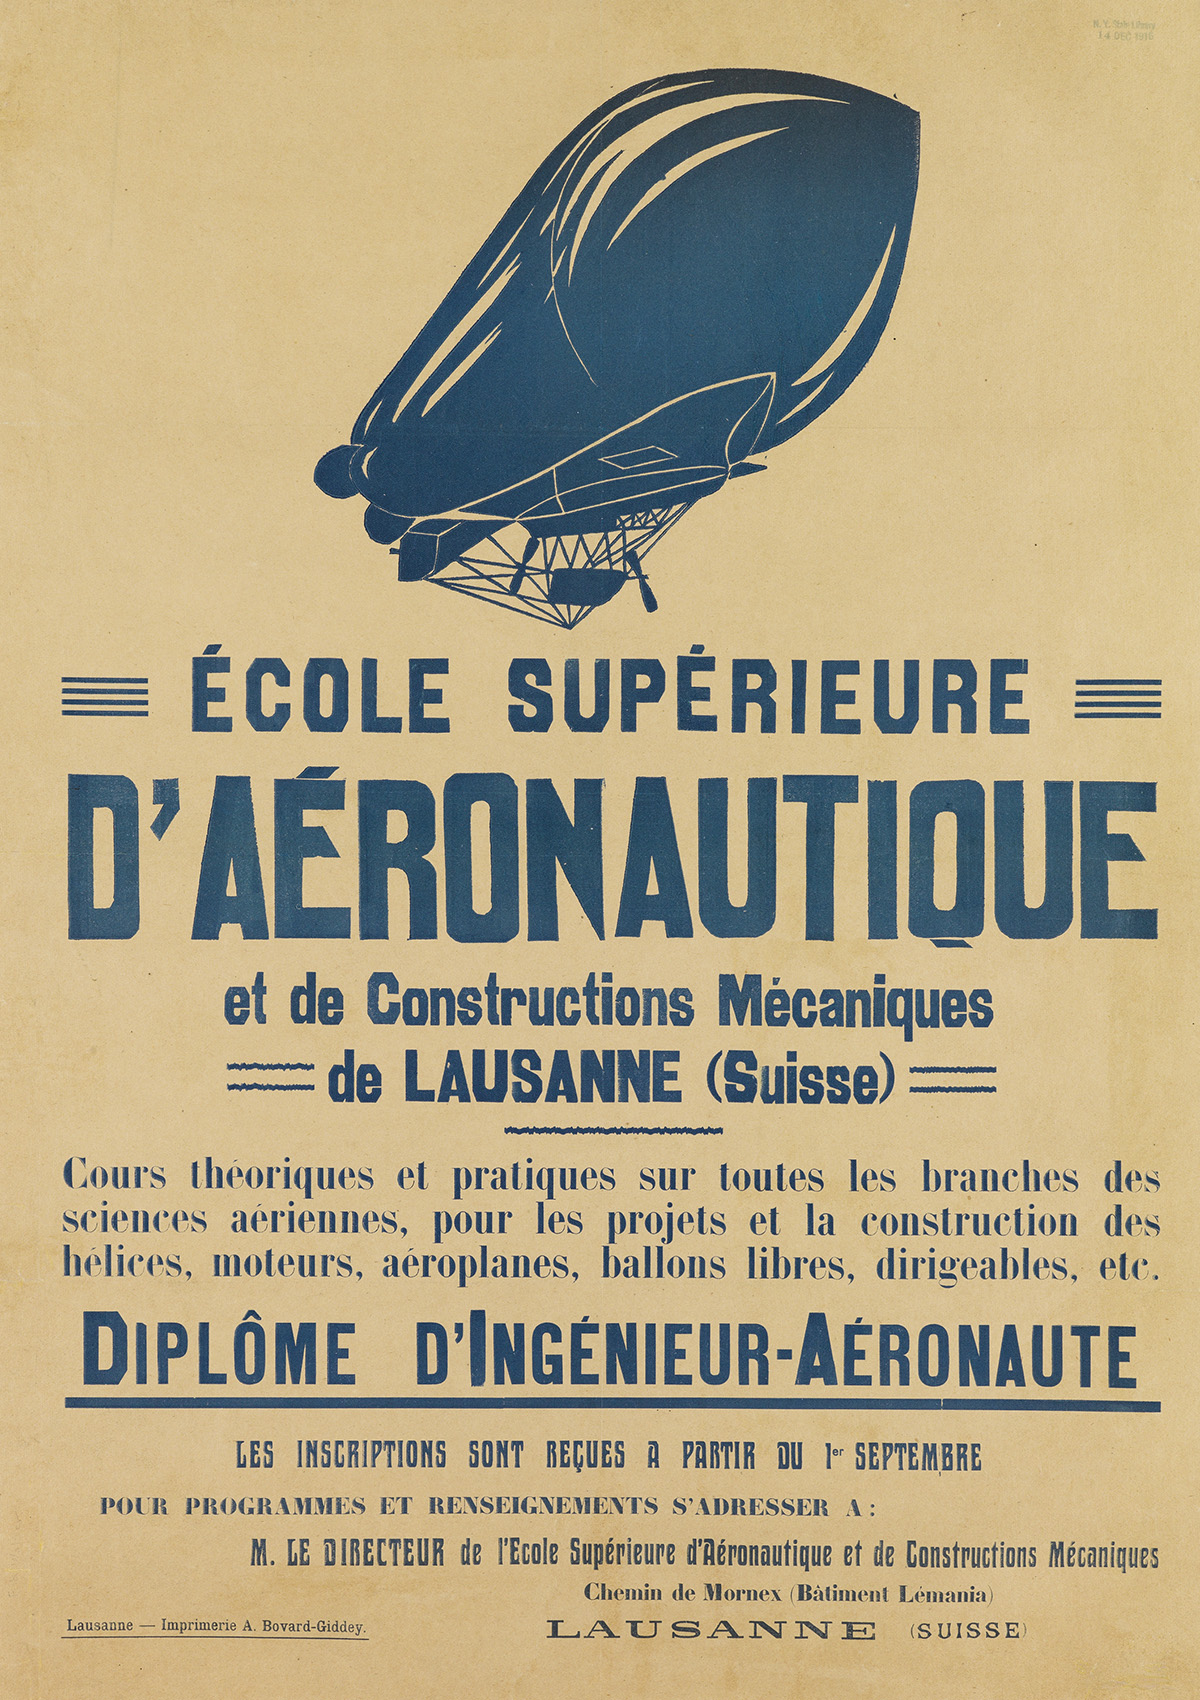 DESIGNER UNKNOWN. ÉCOLE SUPÉRIEURE DAÉRONAUTIQUE. Circa 1910. 27x19 inches, 64x49 cm. A. Bovard-Giddey, Lausanne.